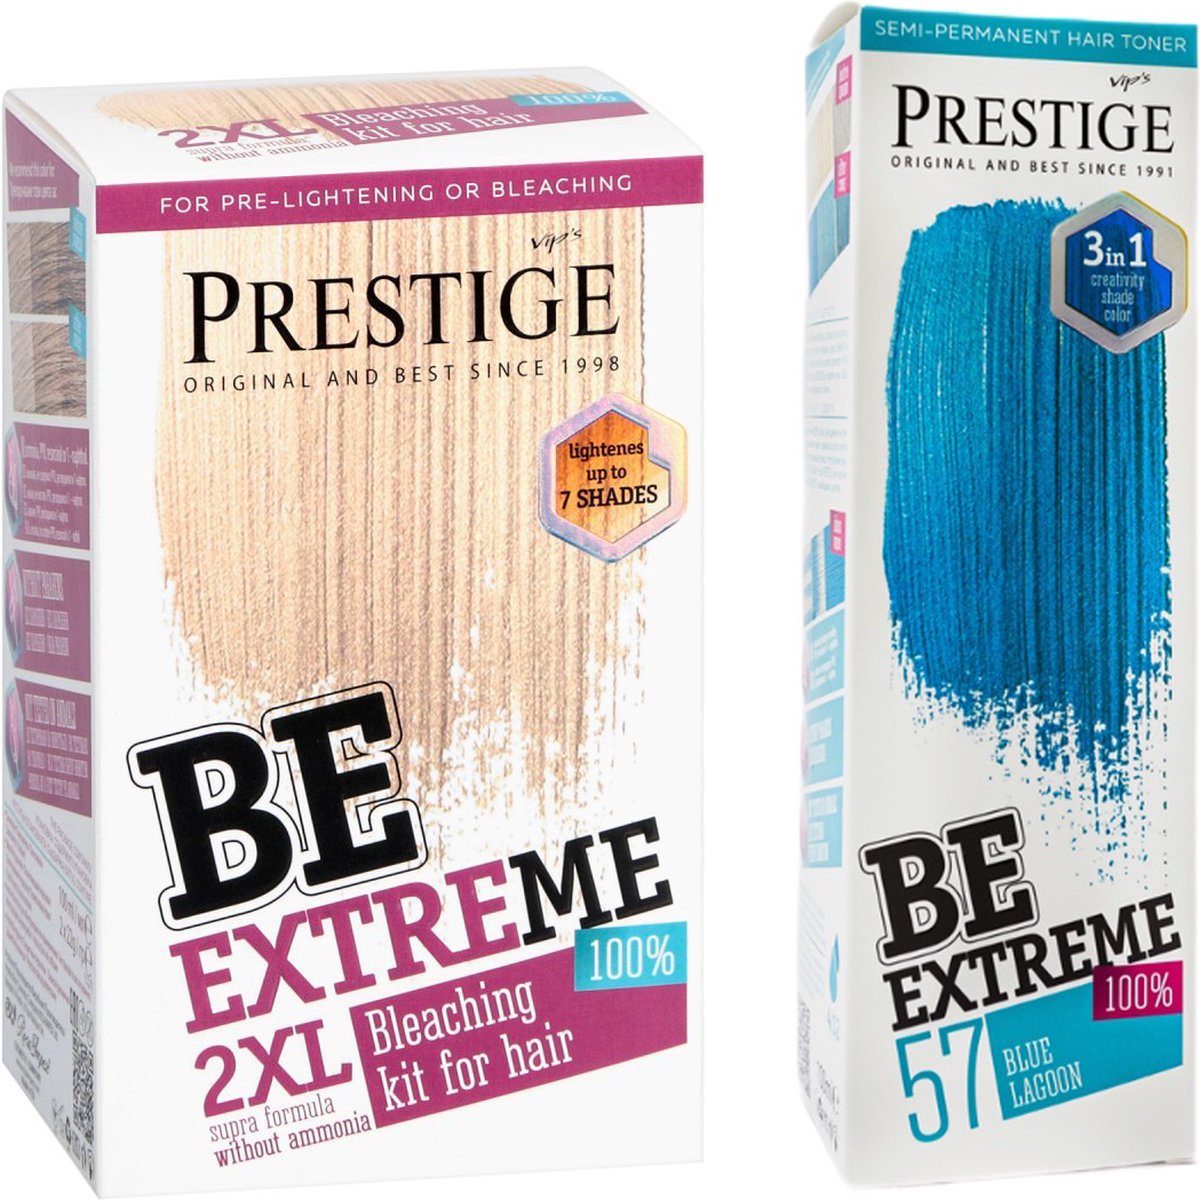 Prestige BeExtreme Semi-Permanente Blauwe Haarkleuring - Bleach kit & Blue Lagoon Voordeelset